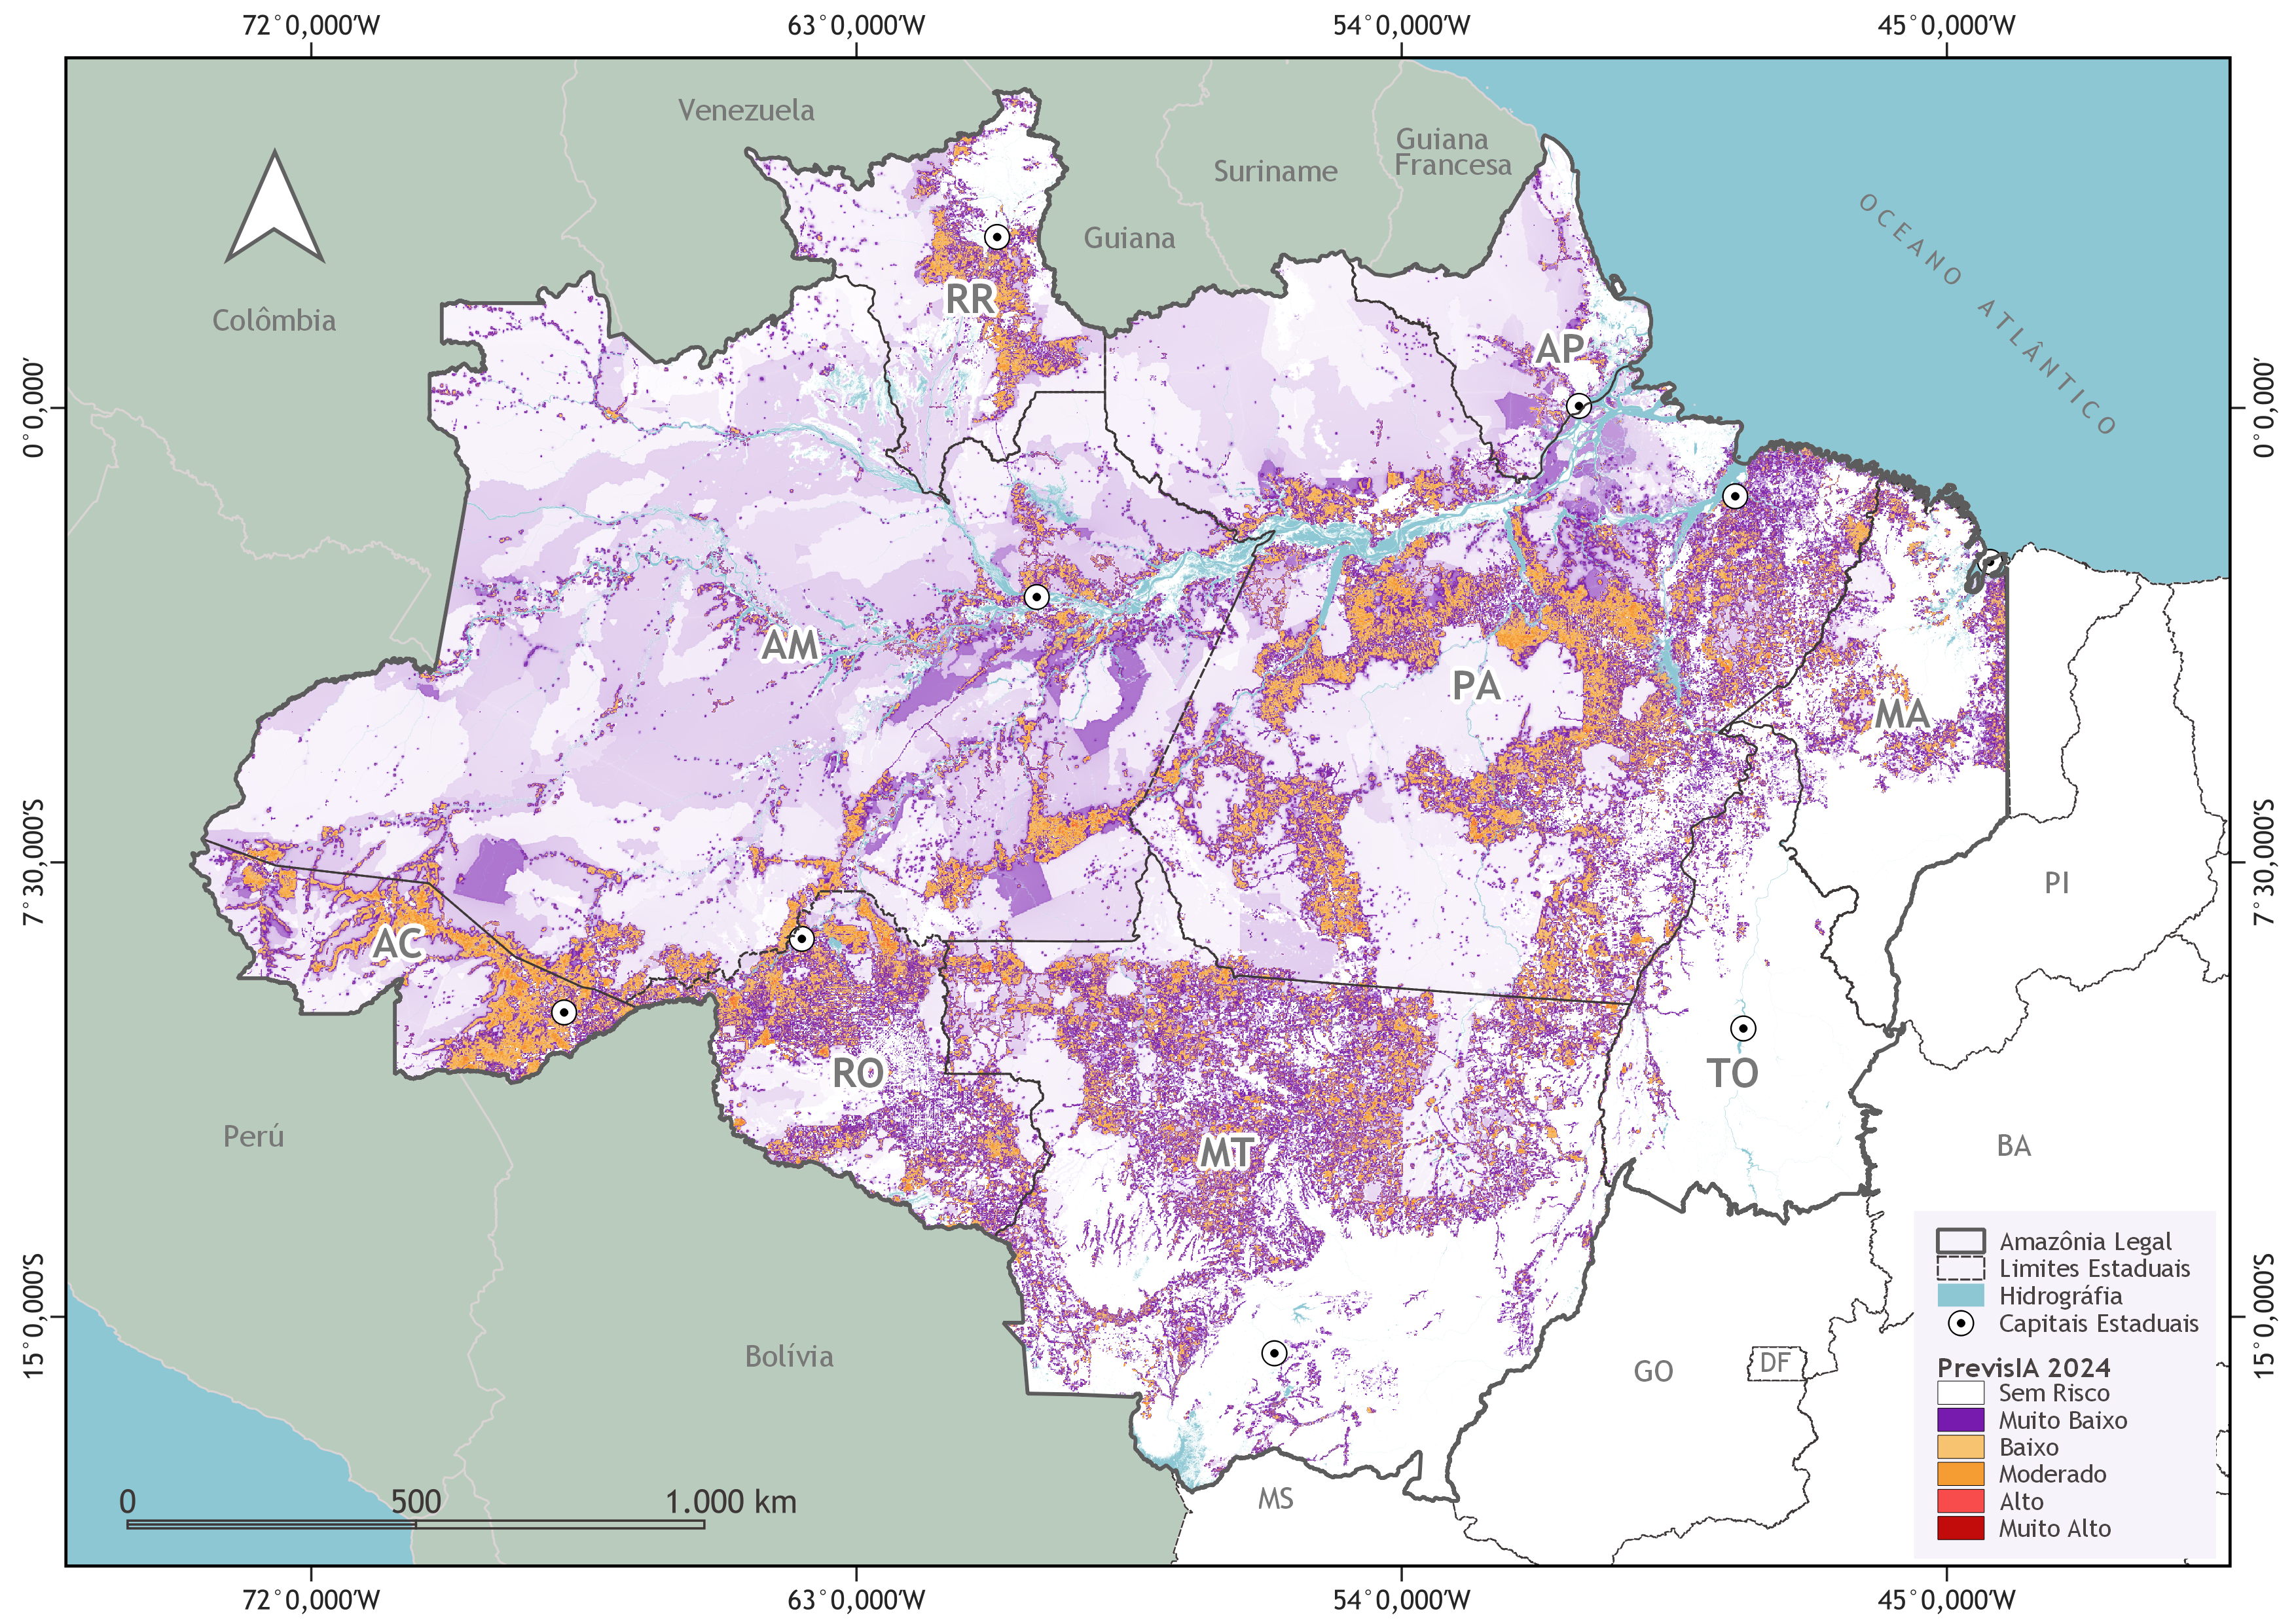 Mapa previsia 2024 v3 - Risco de desmatamento da Amazônia ultrapassa mil campos de futebol por dia em 2024, aponta PrevisIA